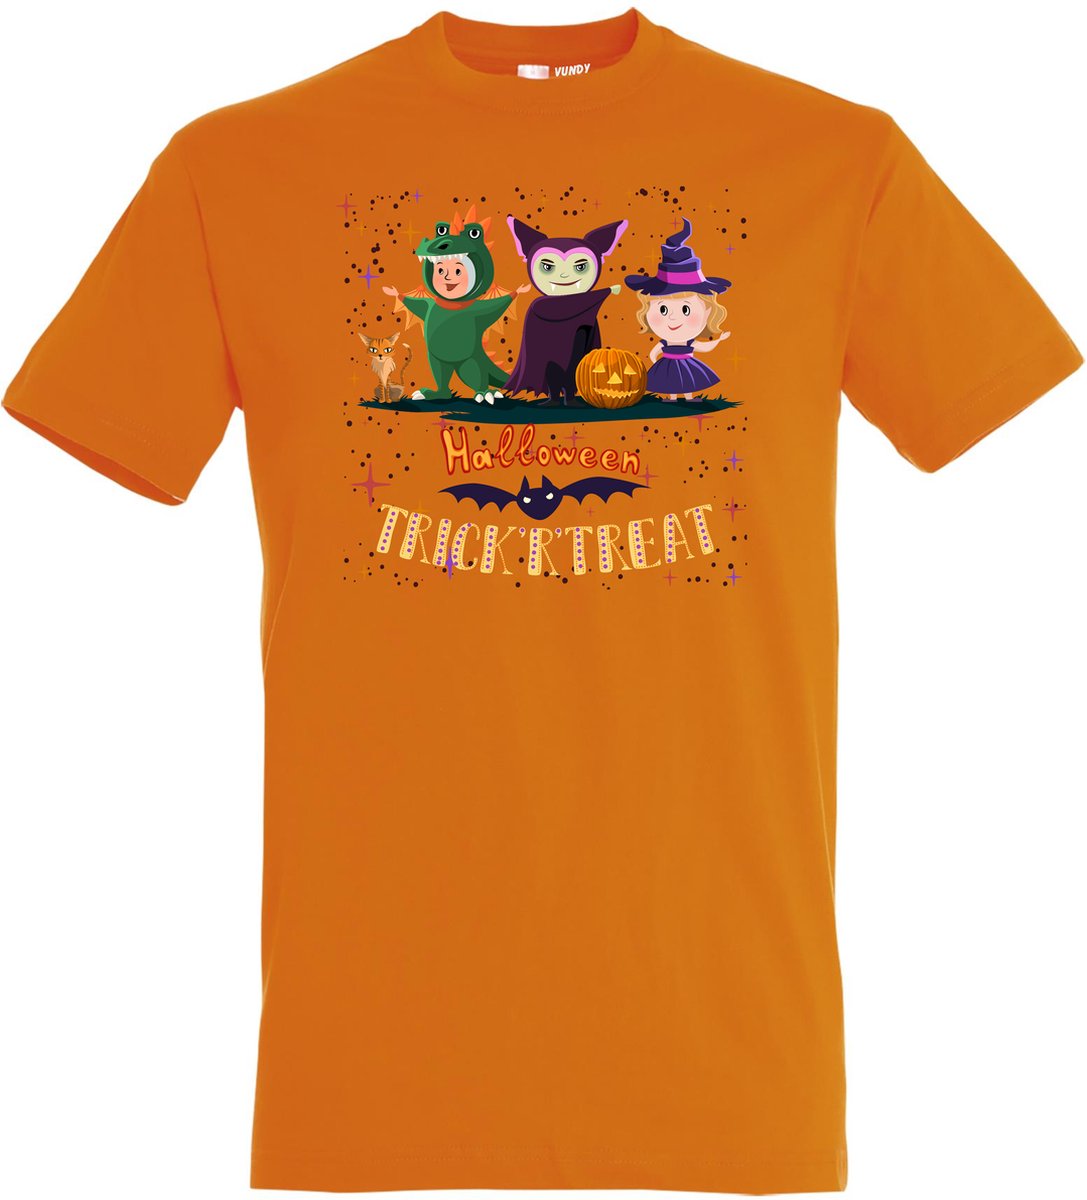 T-shirt kinderen Halloween TrickrTreat | Halloween kostuum kind dames heren | verkleedkleren meisje jongen | Oranje | maat 164